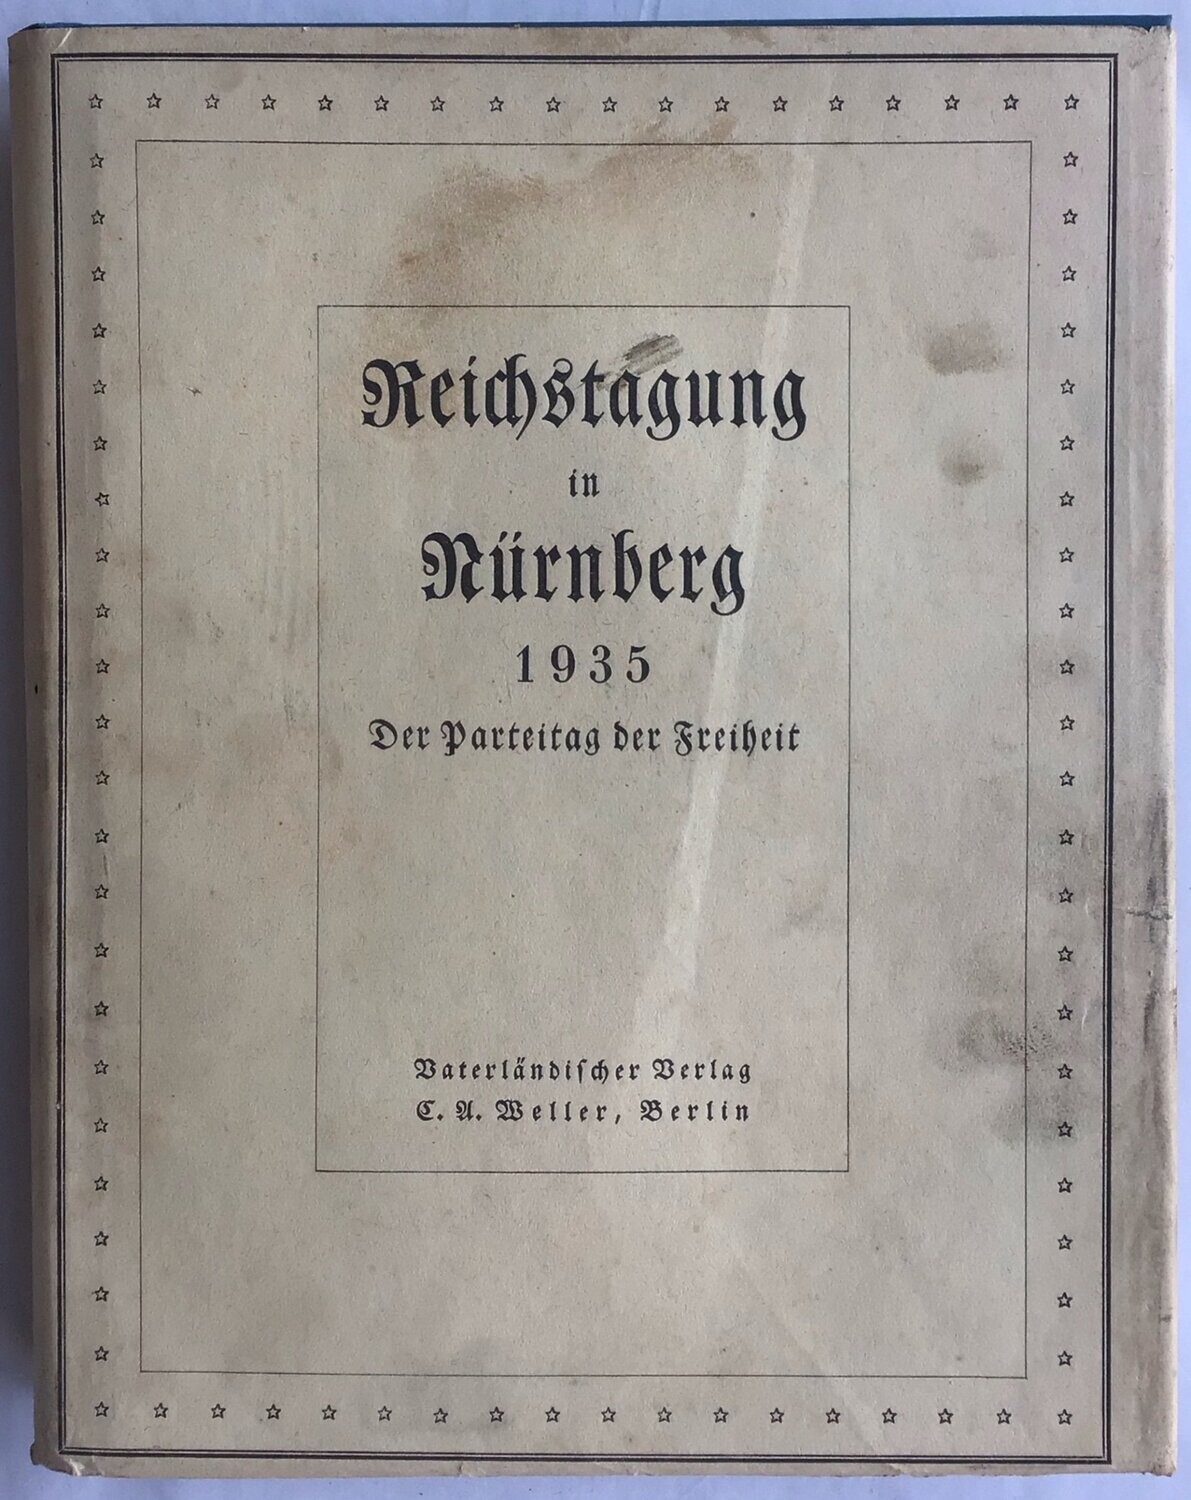 Kerrl: Reichstagung in Nürnberg 1935. Der Parteitag der Freiheit. Ganzleinenausgabe aus dem Jahr 1936 mit Original-Schutzumschlag und Original-Pappschuber.